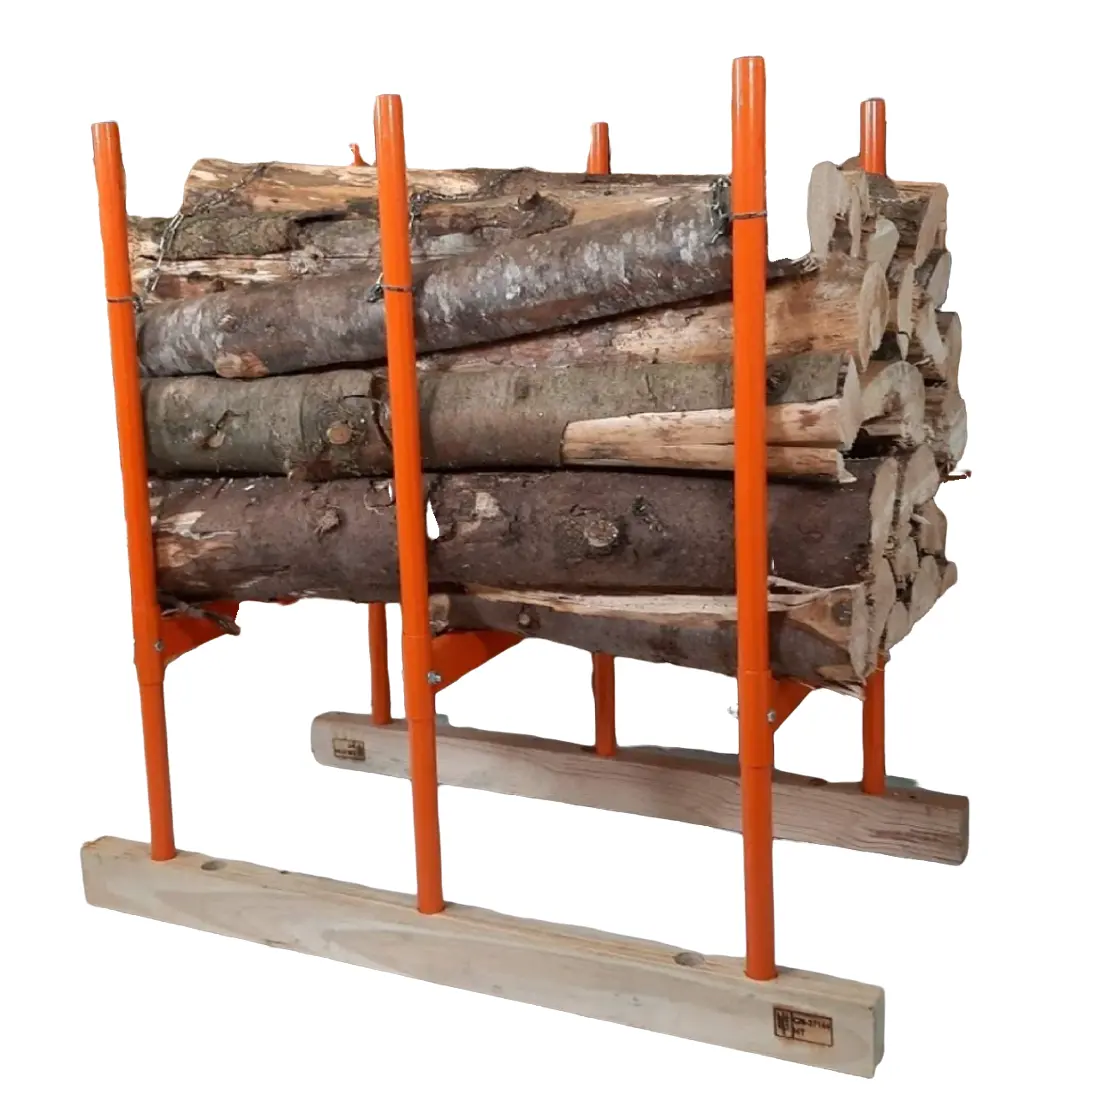 Porte-bûches de stockage en bois de couleur rouge Conception avantageuse Top vente porte-bûches en bois de cheminée intérieure et extérieure de l'Inde